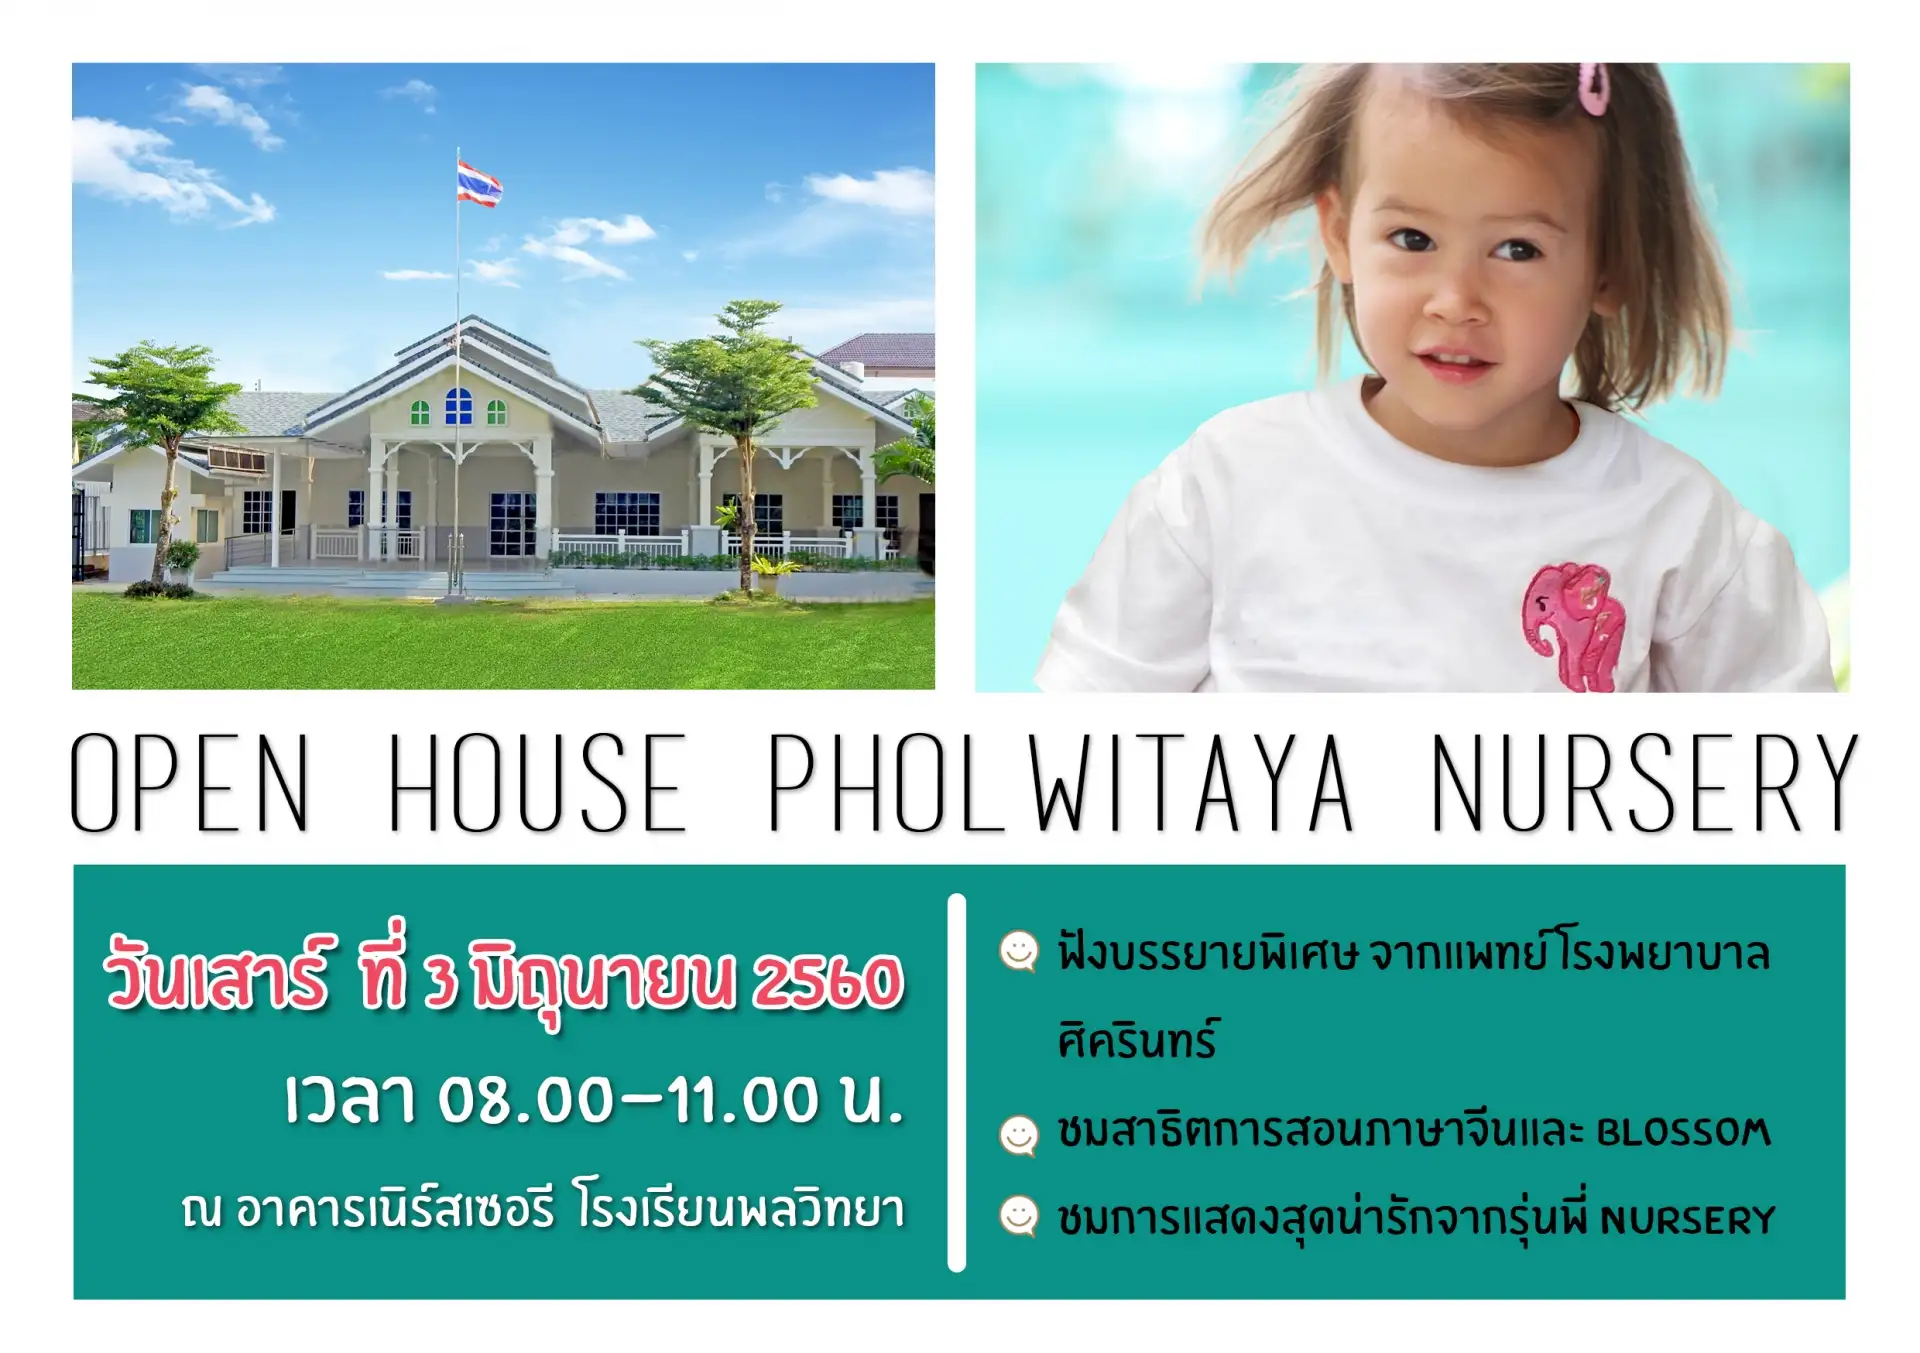 พลวิทยาเตรียมจัดงาน Open House Pholwitaya Nursery